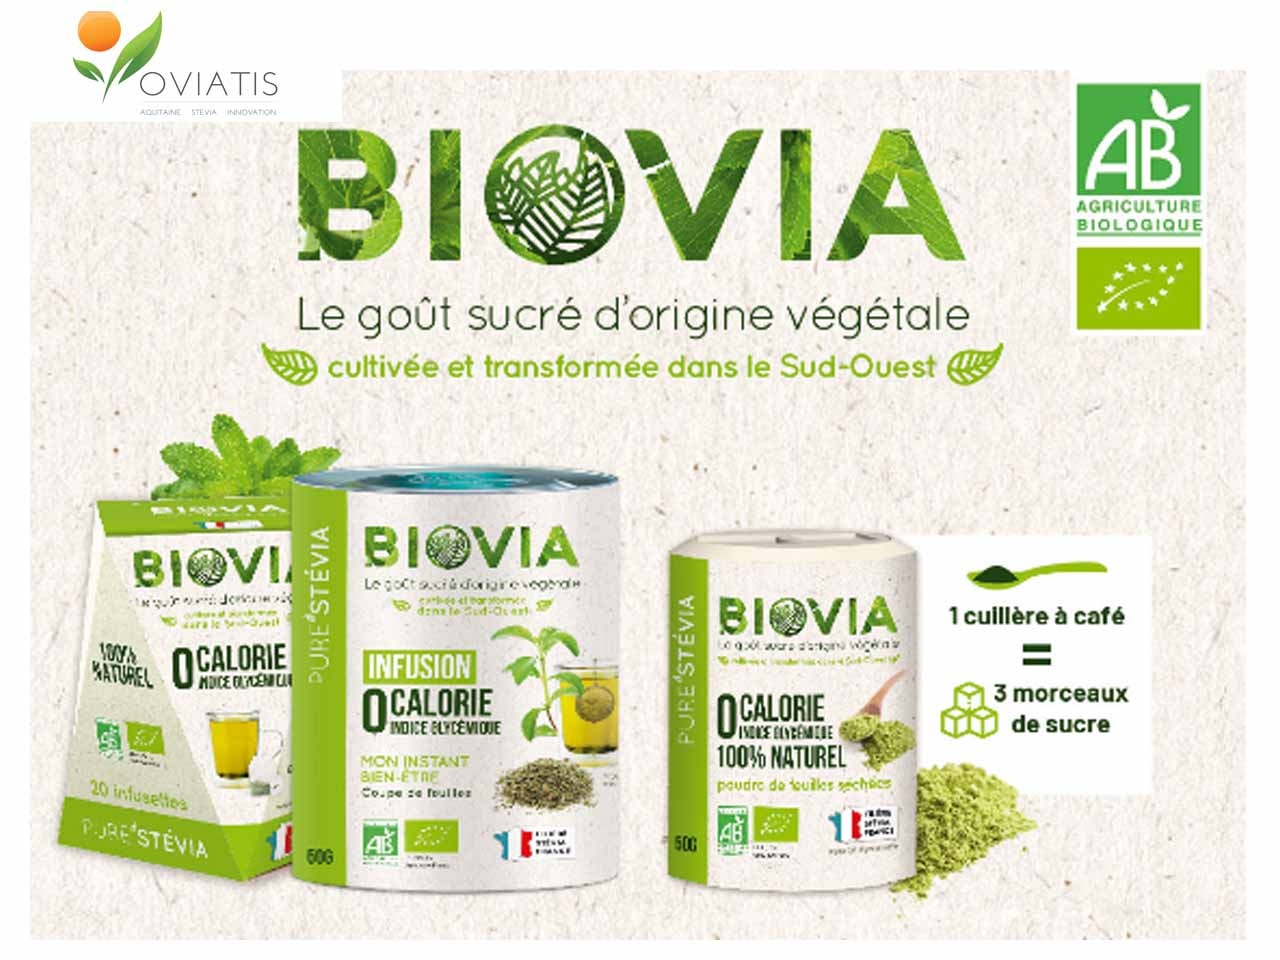 Oviatis présente la stévia bio cultivée et transformée en France